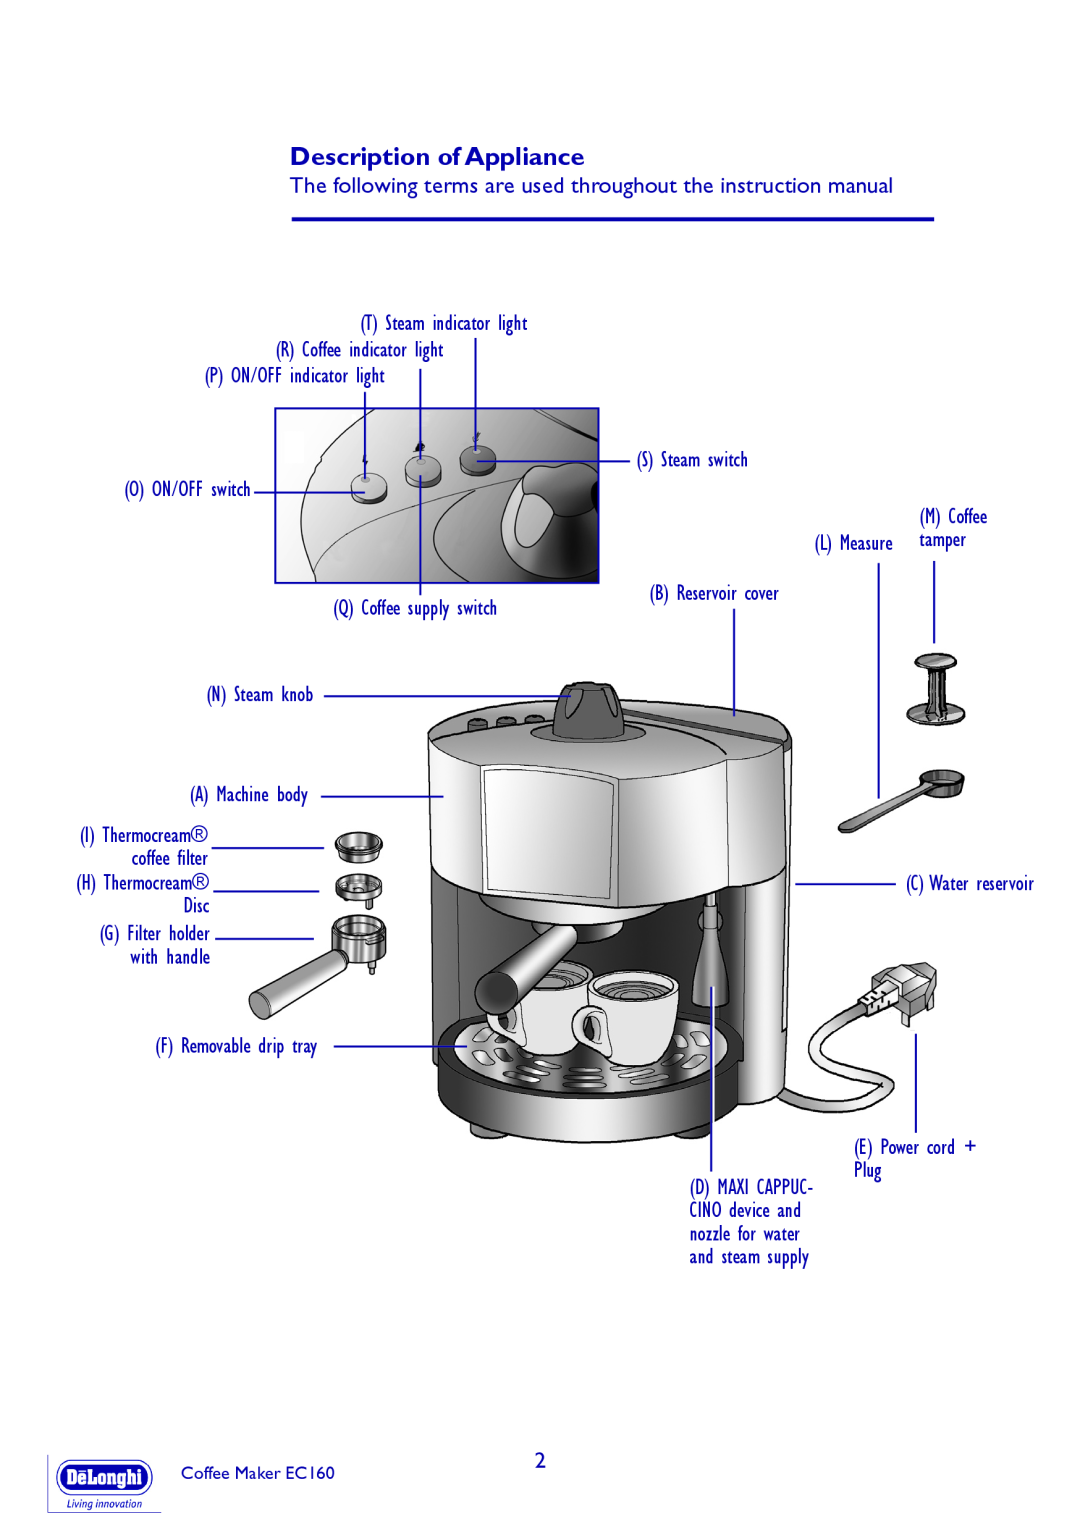 DeLonghi EC160 manual Description of Appliance 